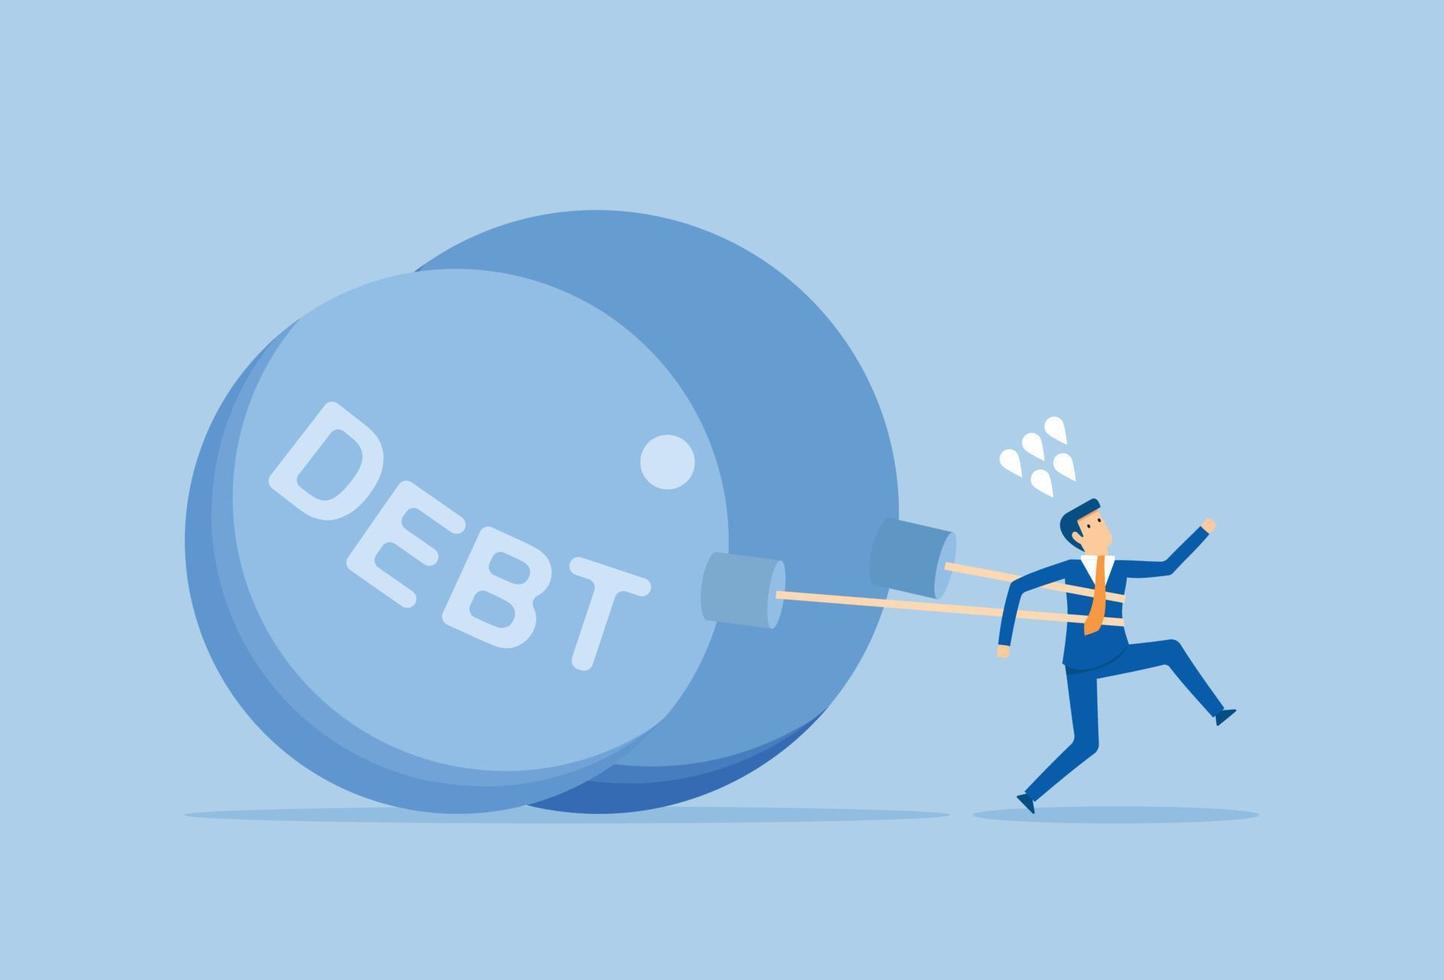 une grande quantité de dette affecte le progrès de l'homme d'affaires vecteur